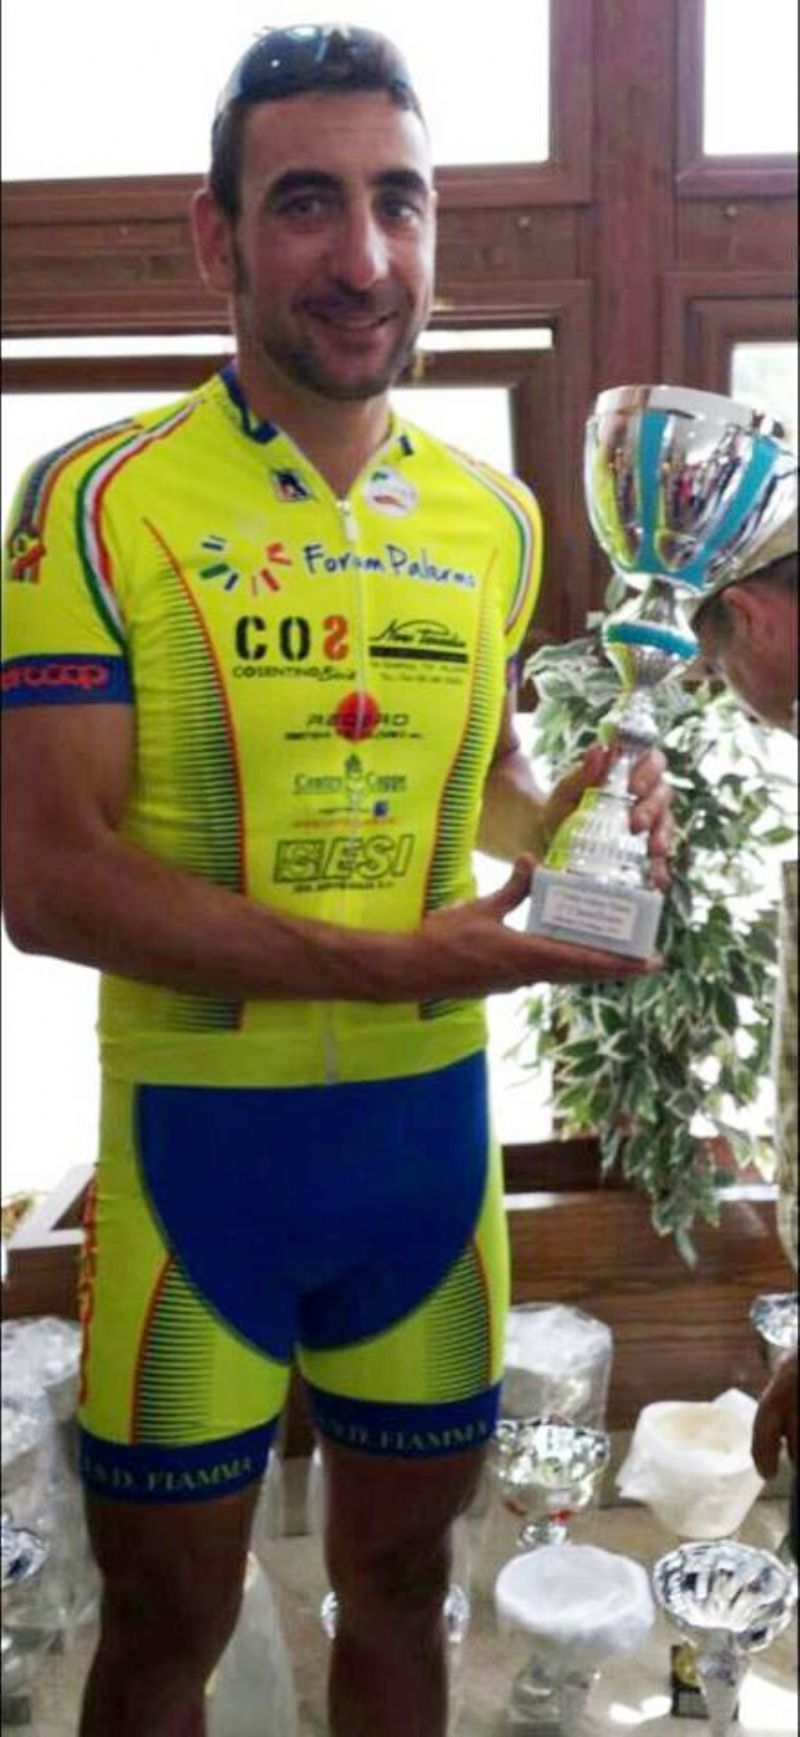 PALERMO: I° Trofeo Villanti, su strada per cicloamatori, organizzata dalla società A.S.D. Libertas Boccadifalco.